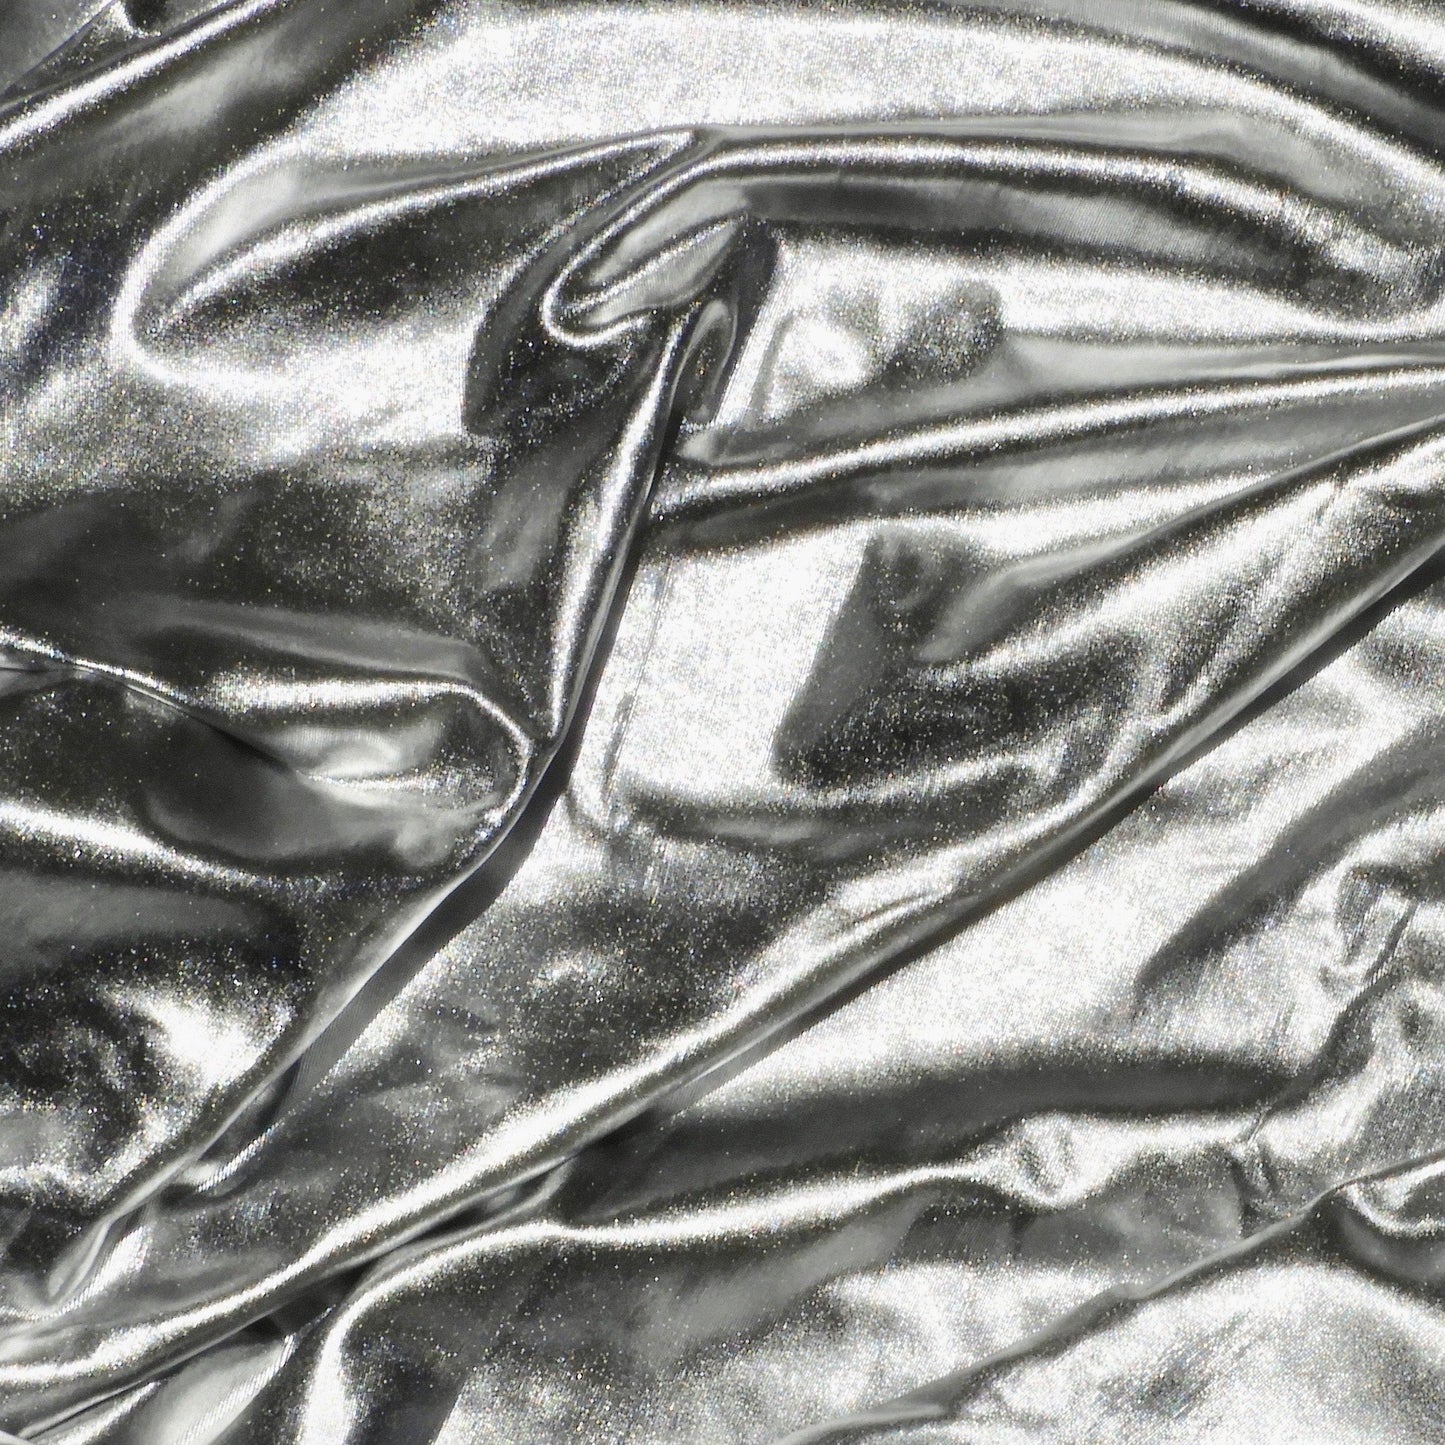  stretchy metallic silver head wrap